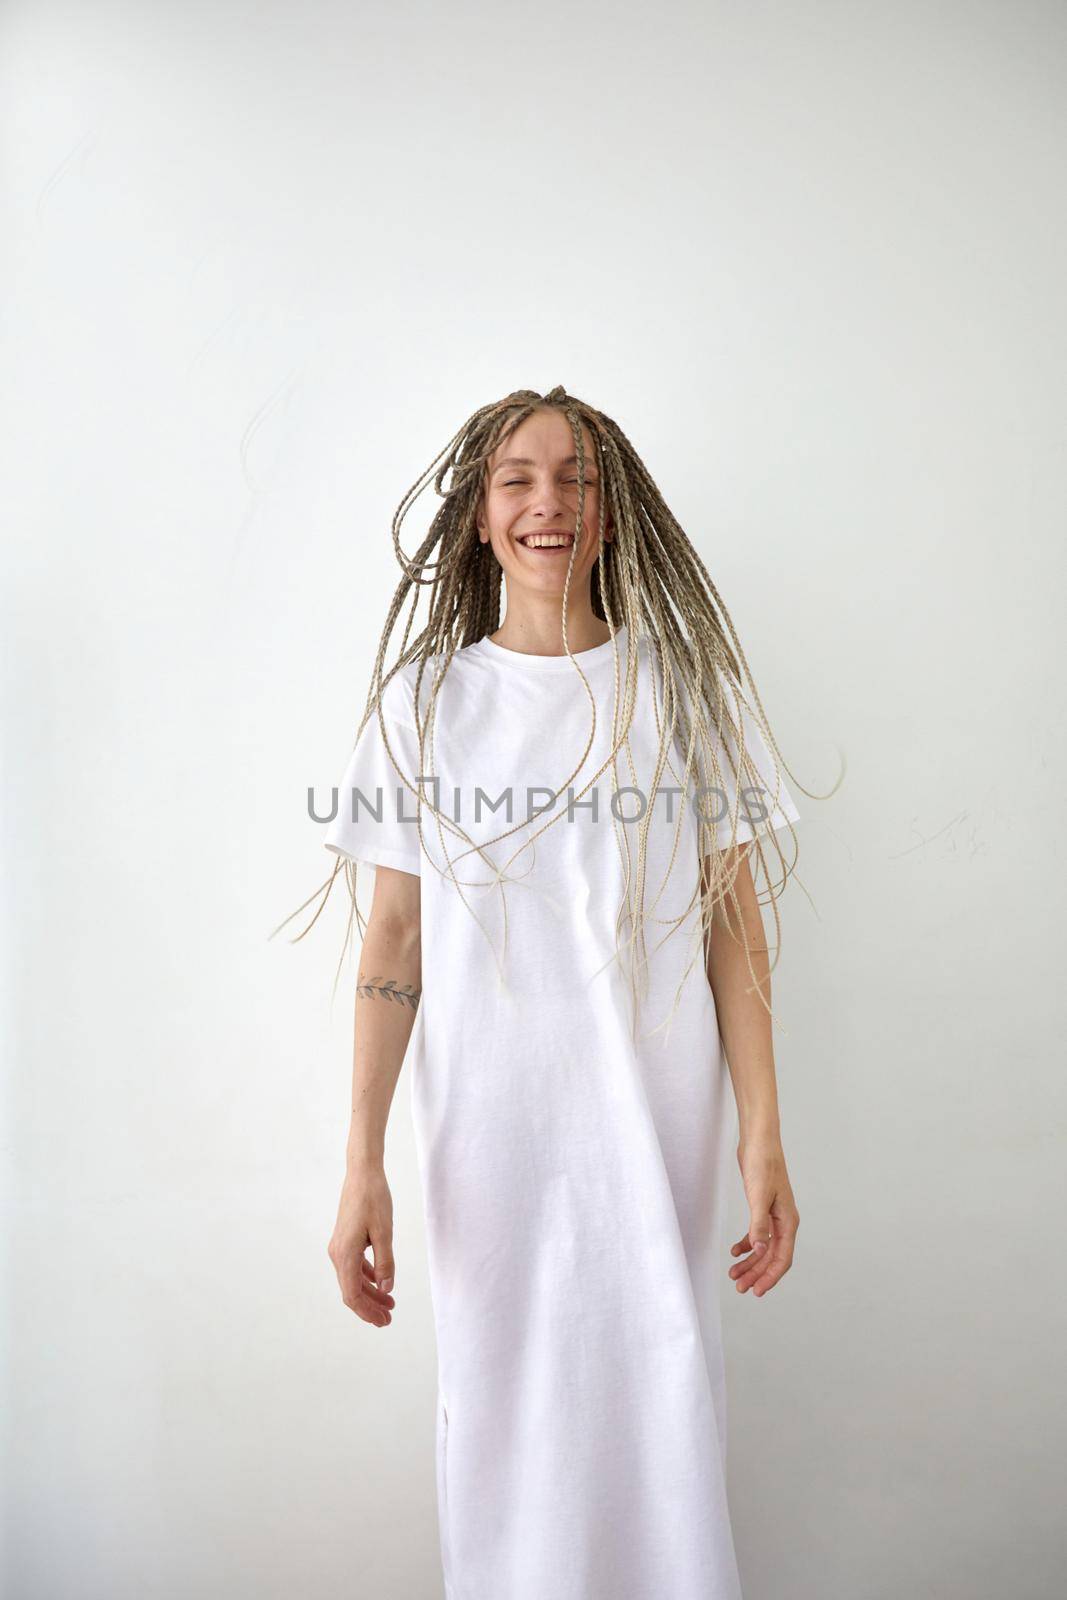 Joyful woman in white dress standing in light studio by Demkat